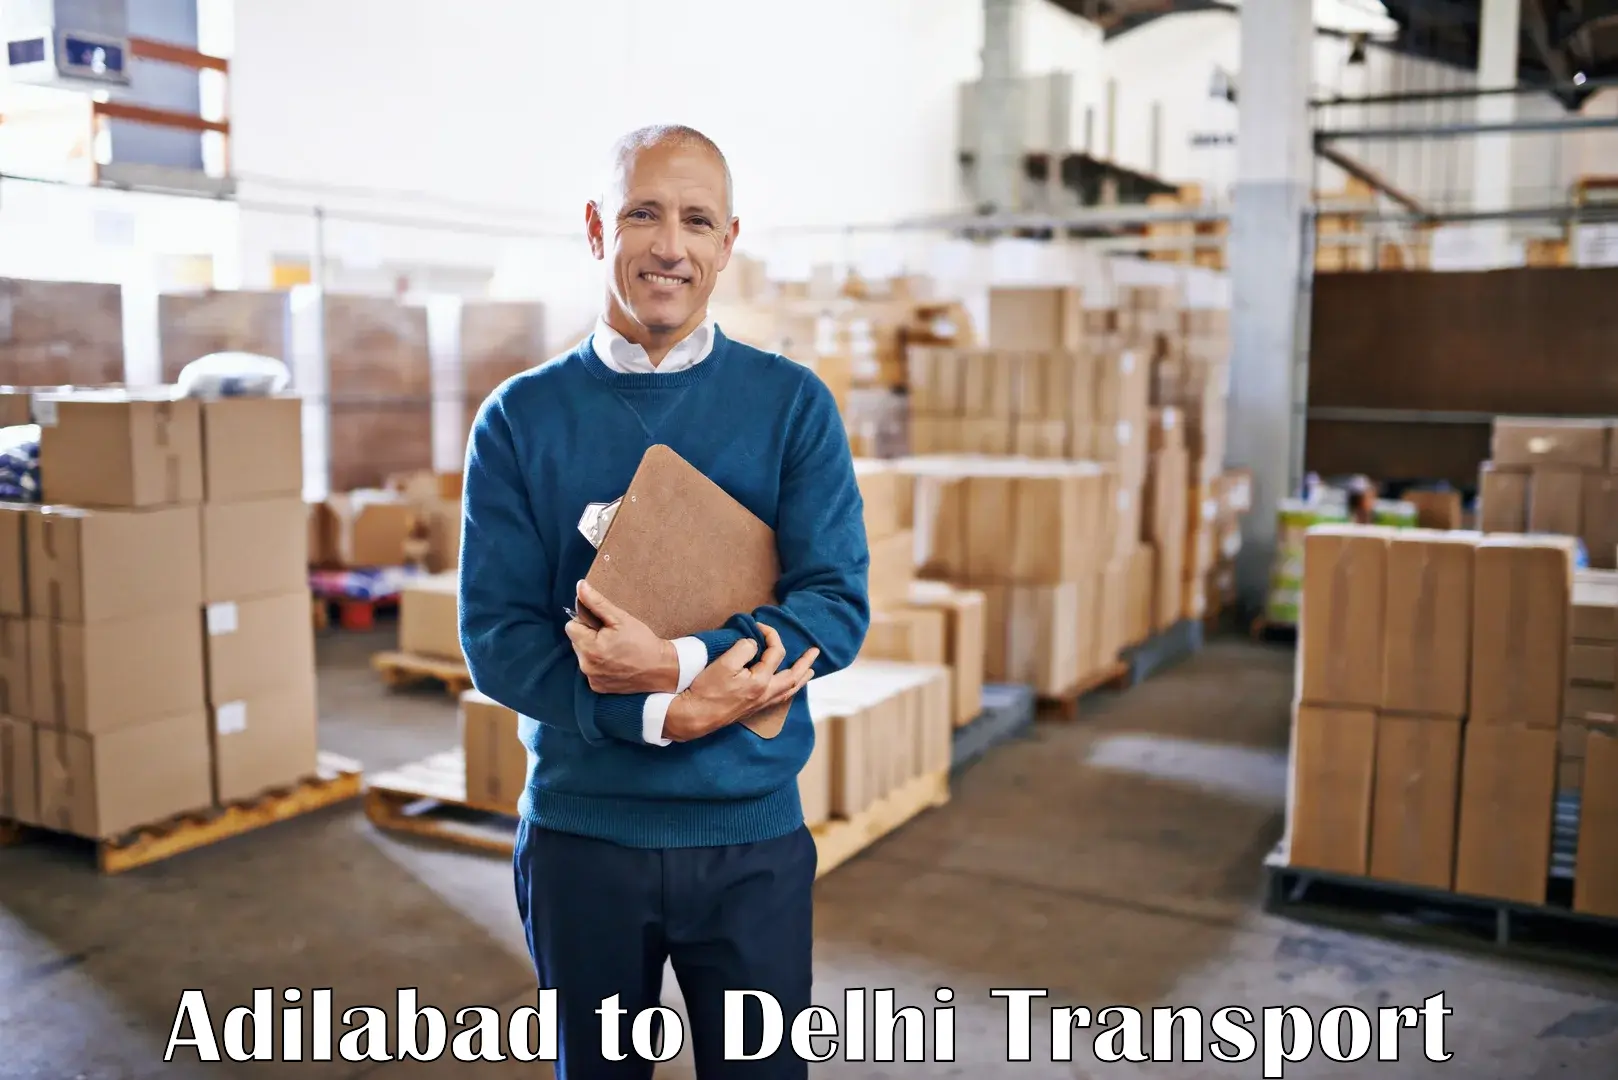 Express transport services Adilabad to Jamia Millia Islamia New Delhi